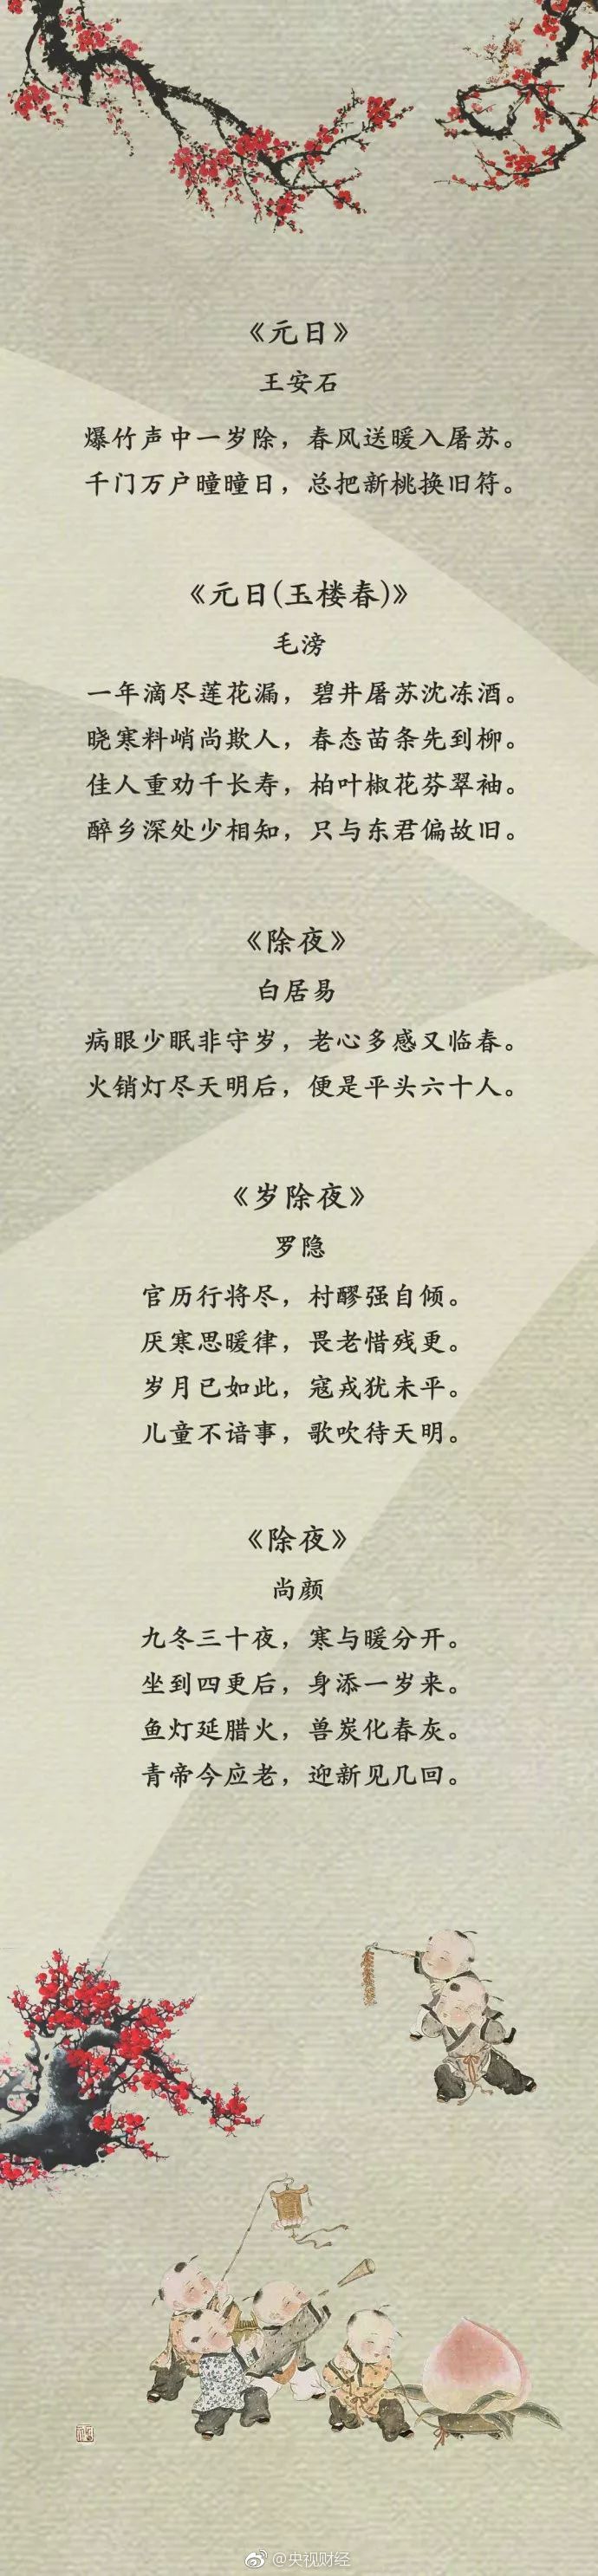 还在为过年祝福语烦恼吗 50首春节诗句送给你 过个诗意中国年 财经头条